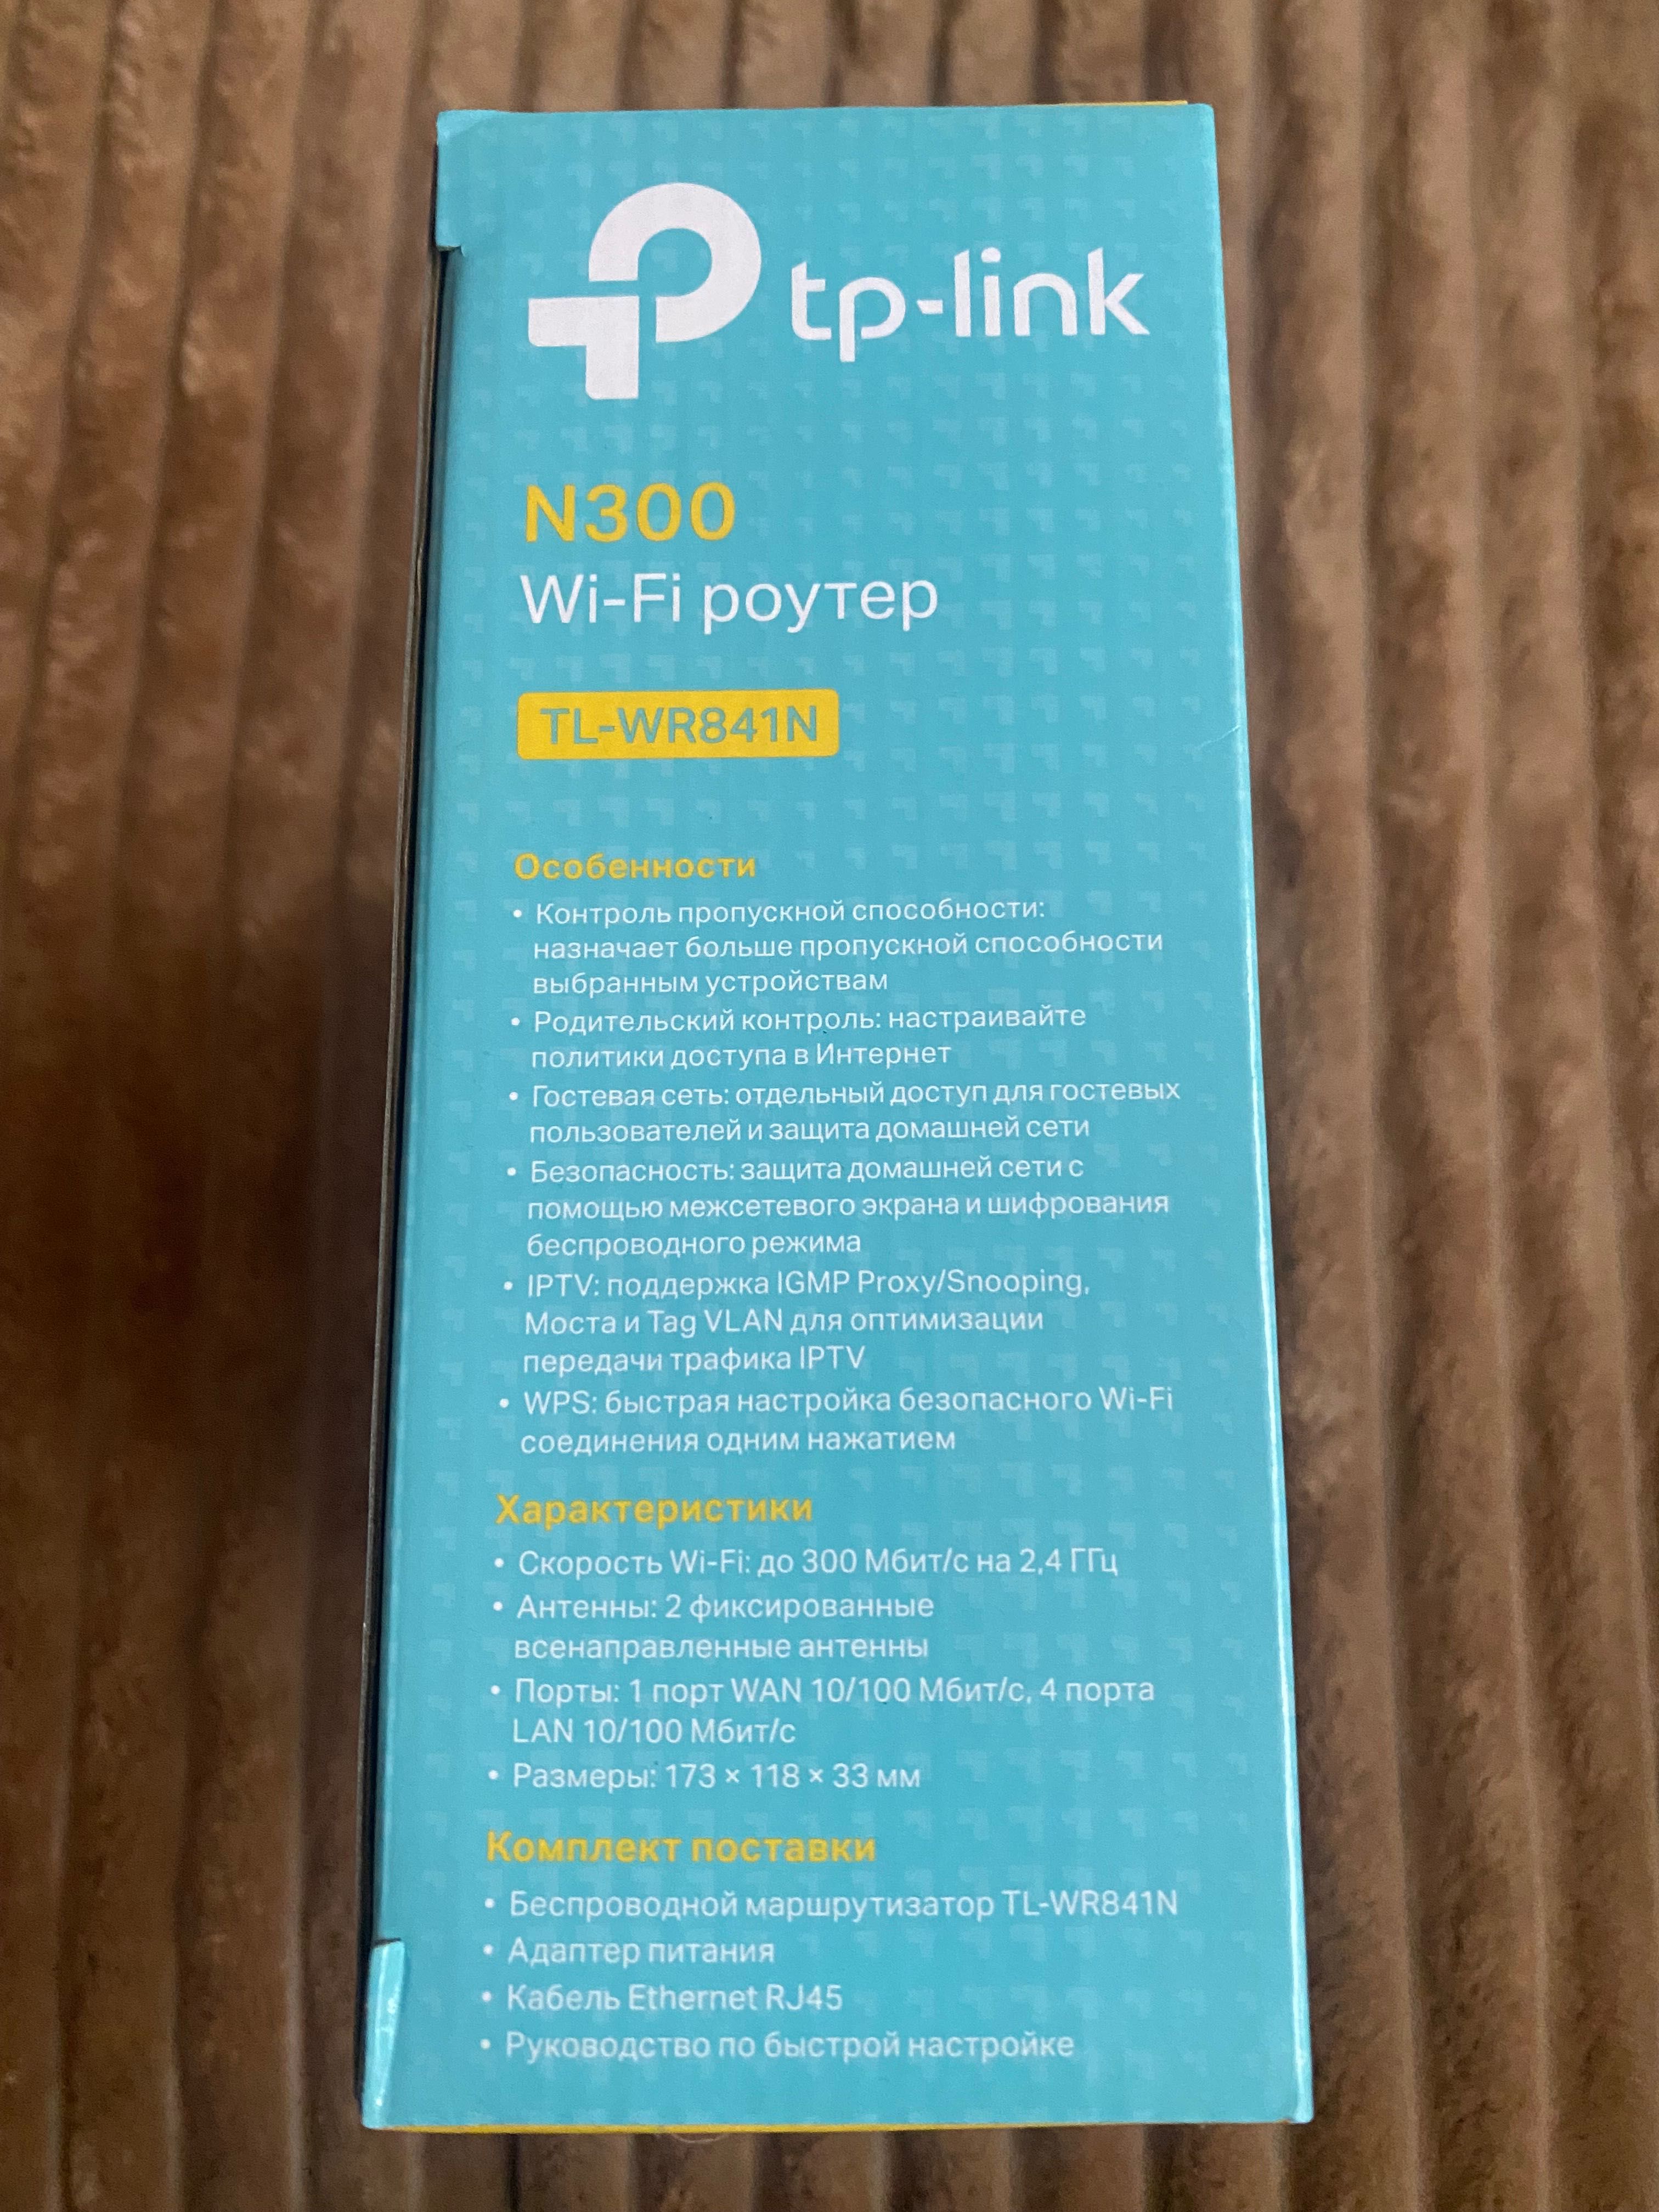 Wi-Fi poyтер tp-link N300 Вай-фай